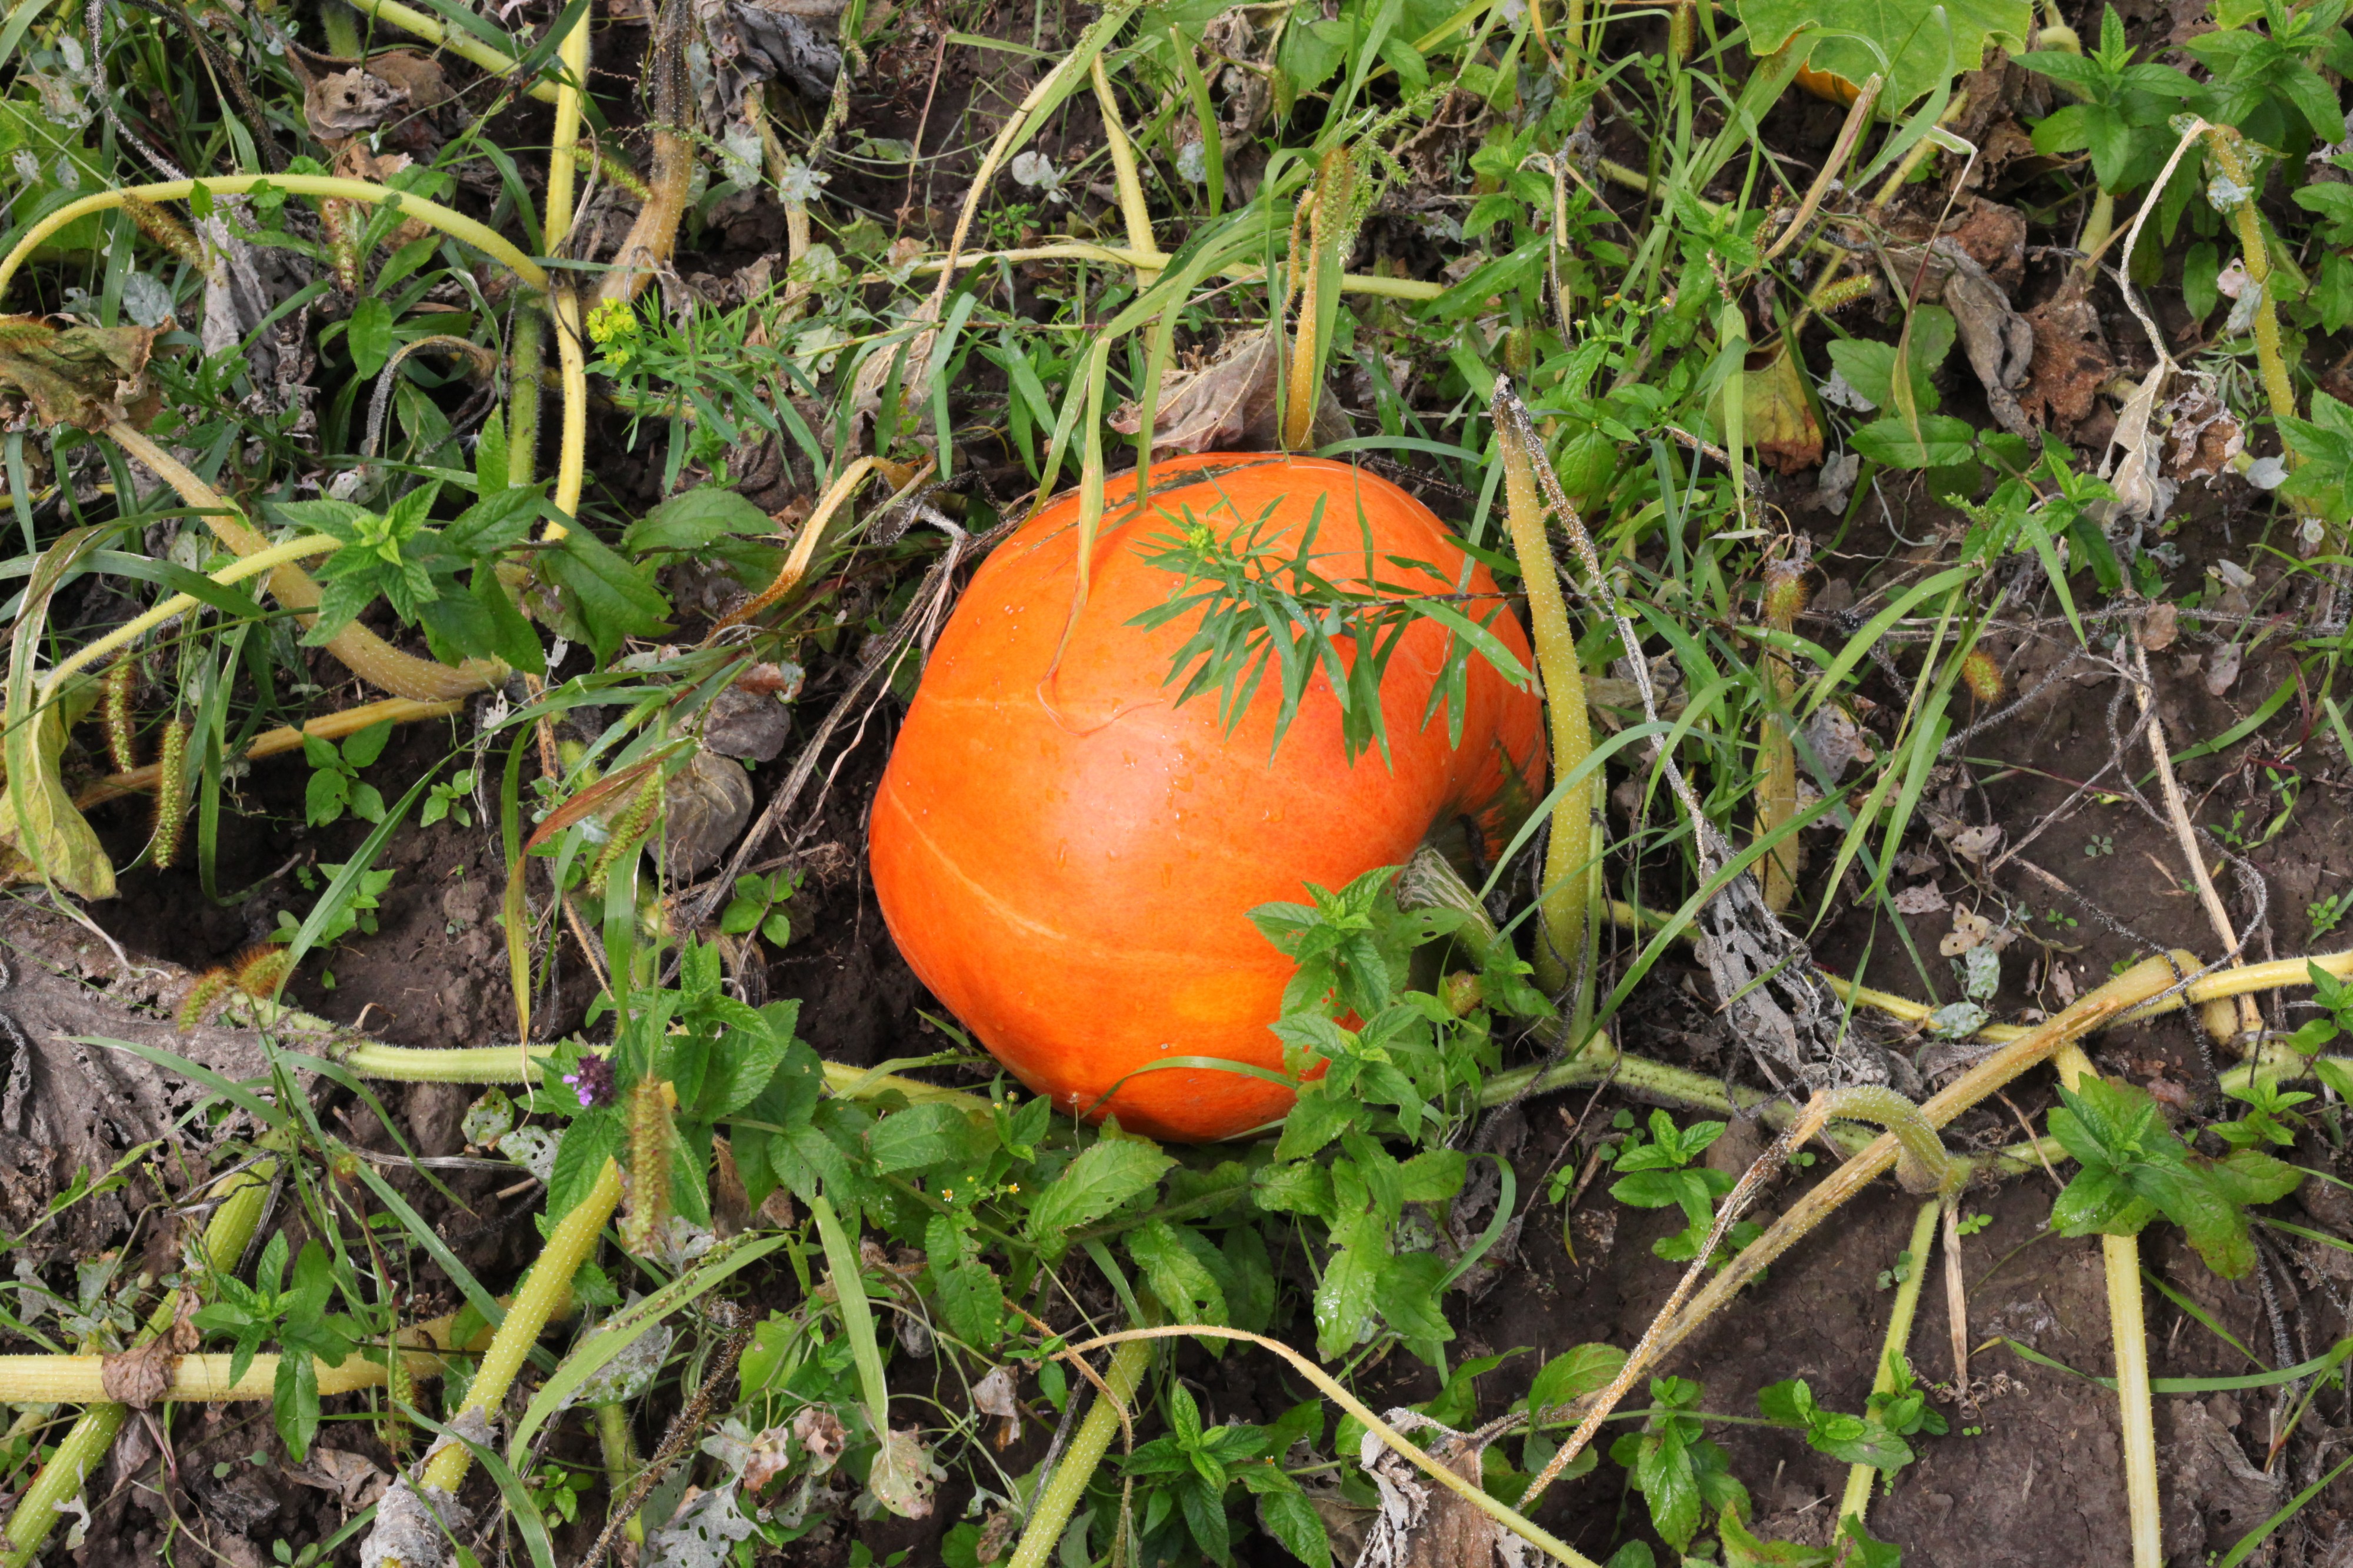 A pumpkin in a field